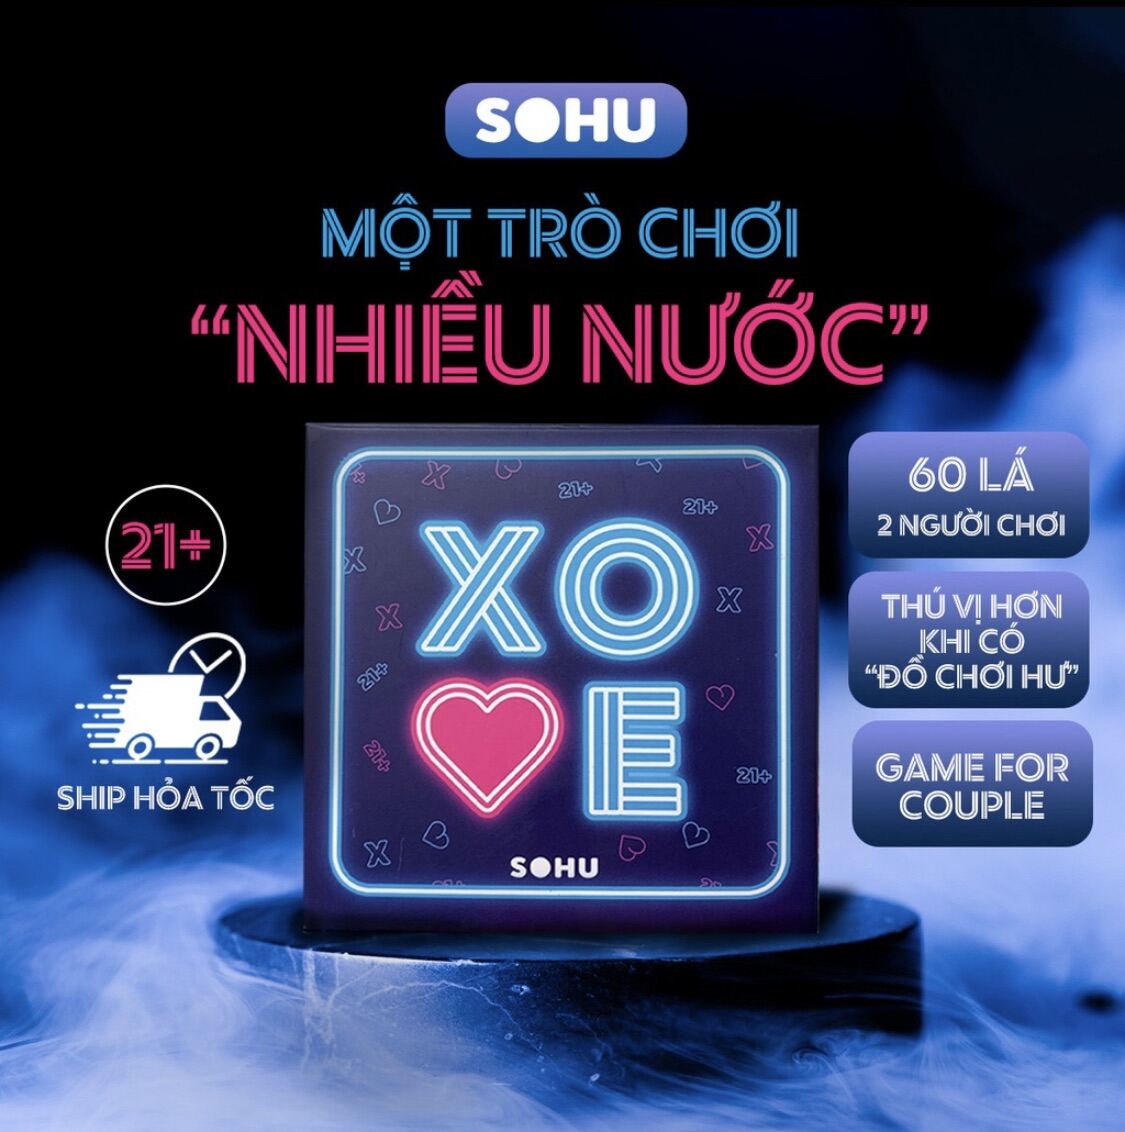 Bộ bài tình yêu XOVE, boardgame cặp đôi Sohu trò chơi cho couple hẹn hò